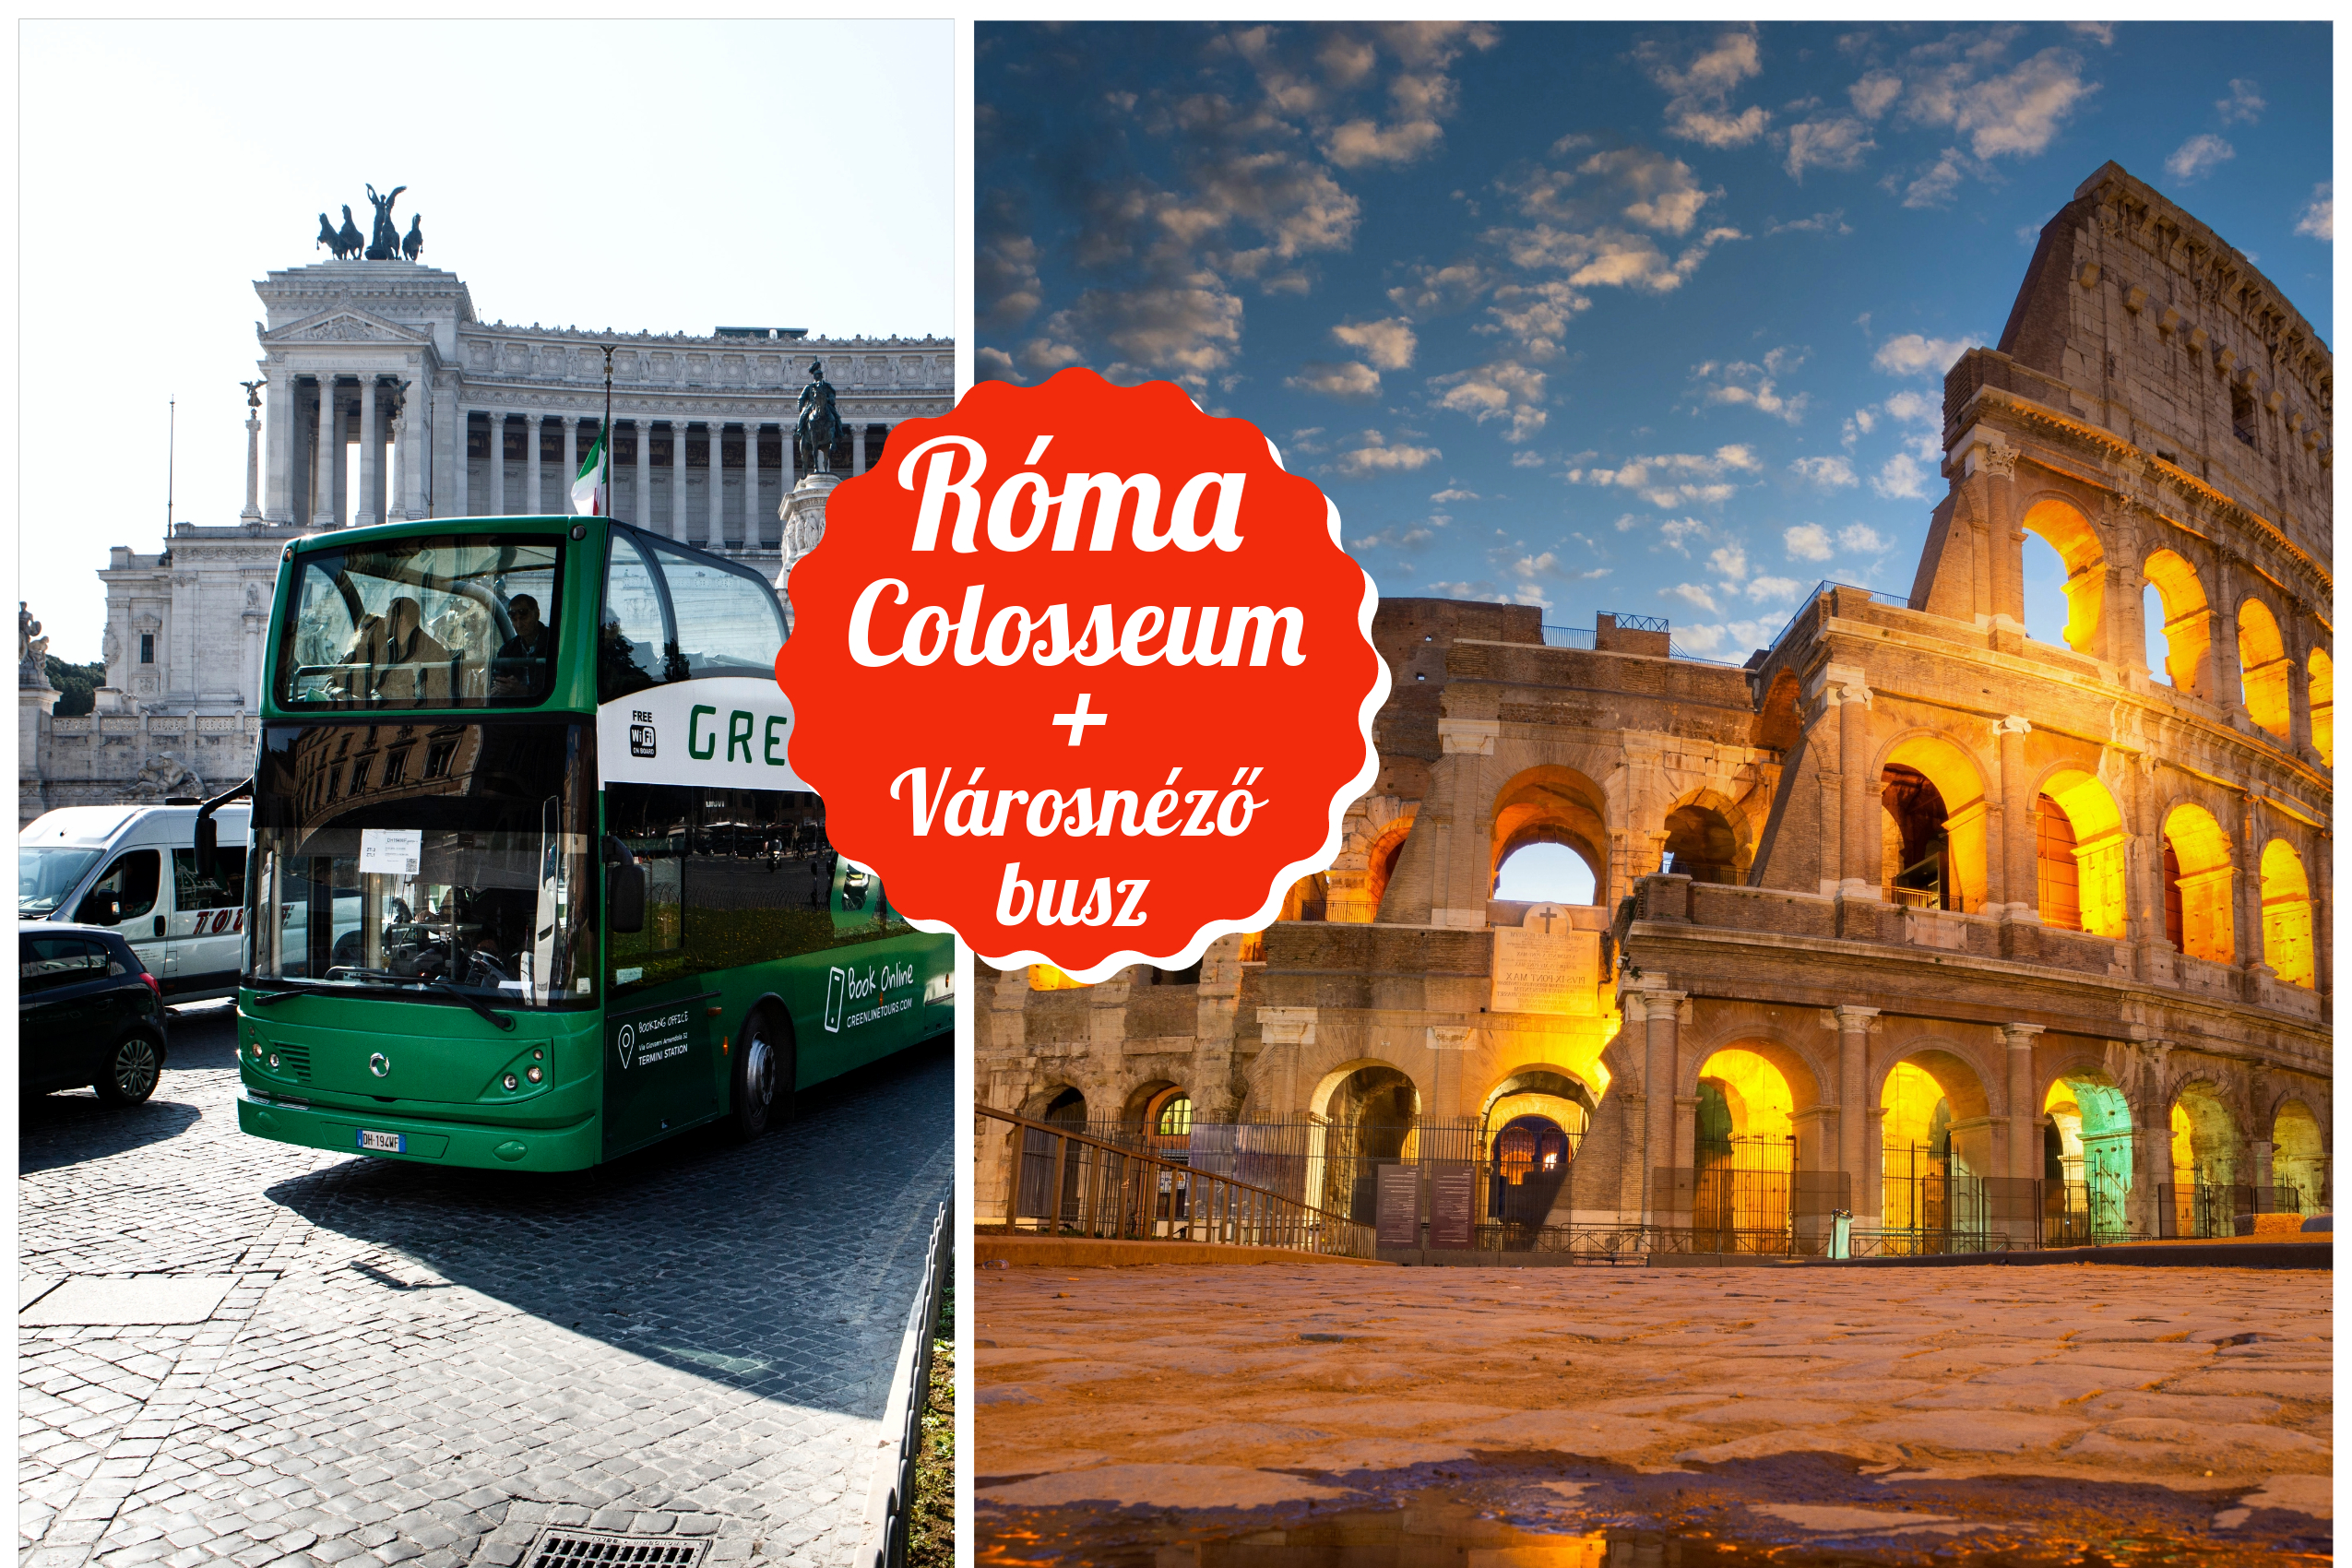 Colosseum belépőjegy + városnéző busz jegy